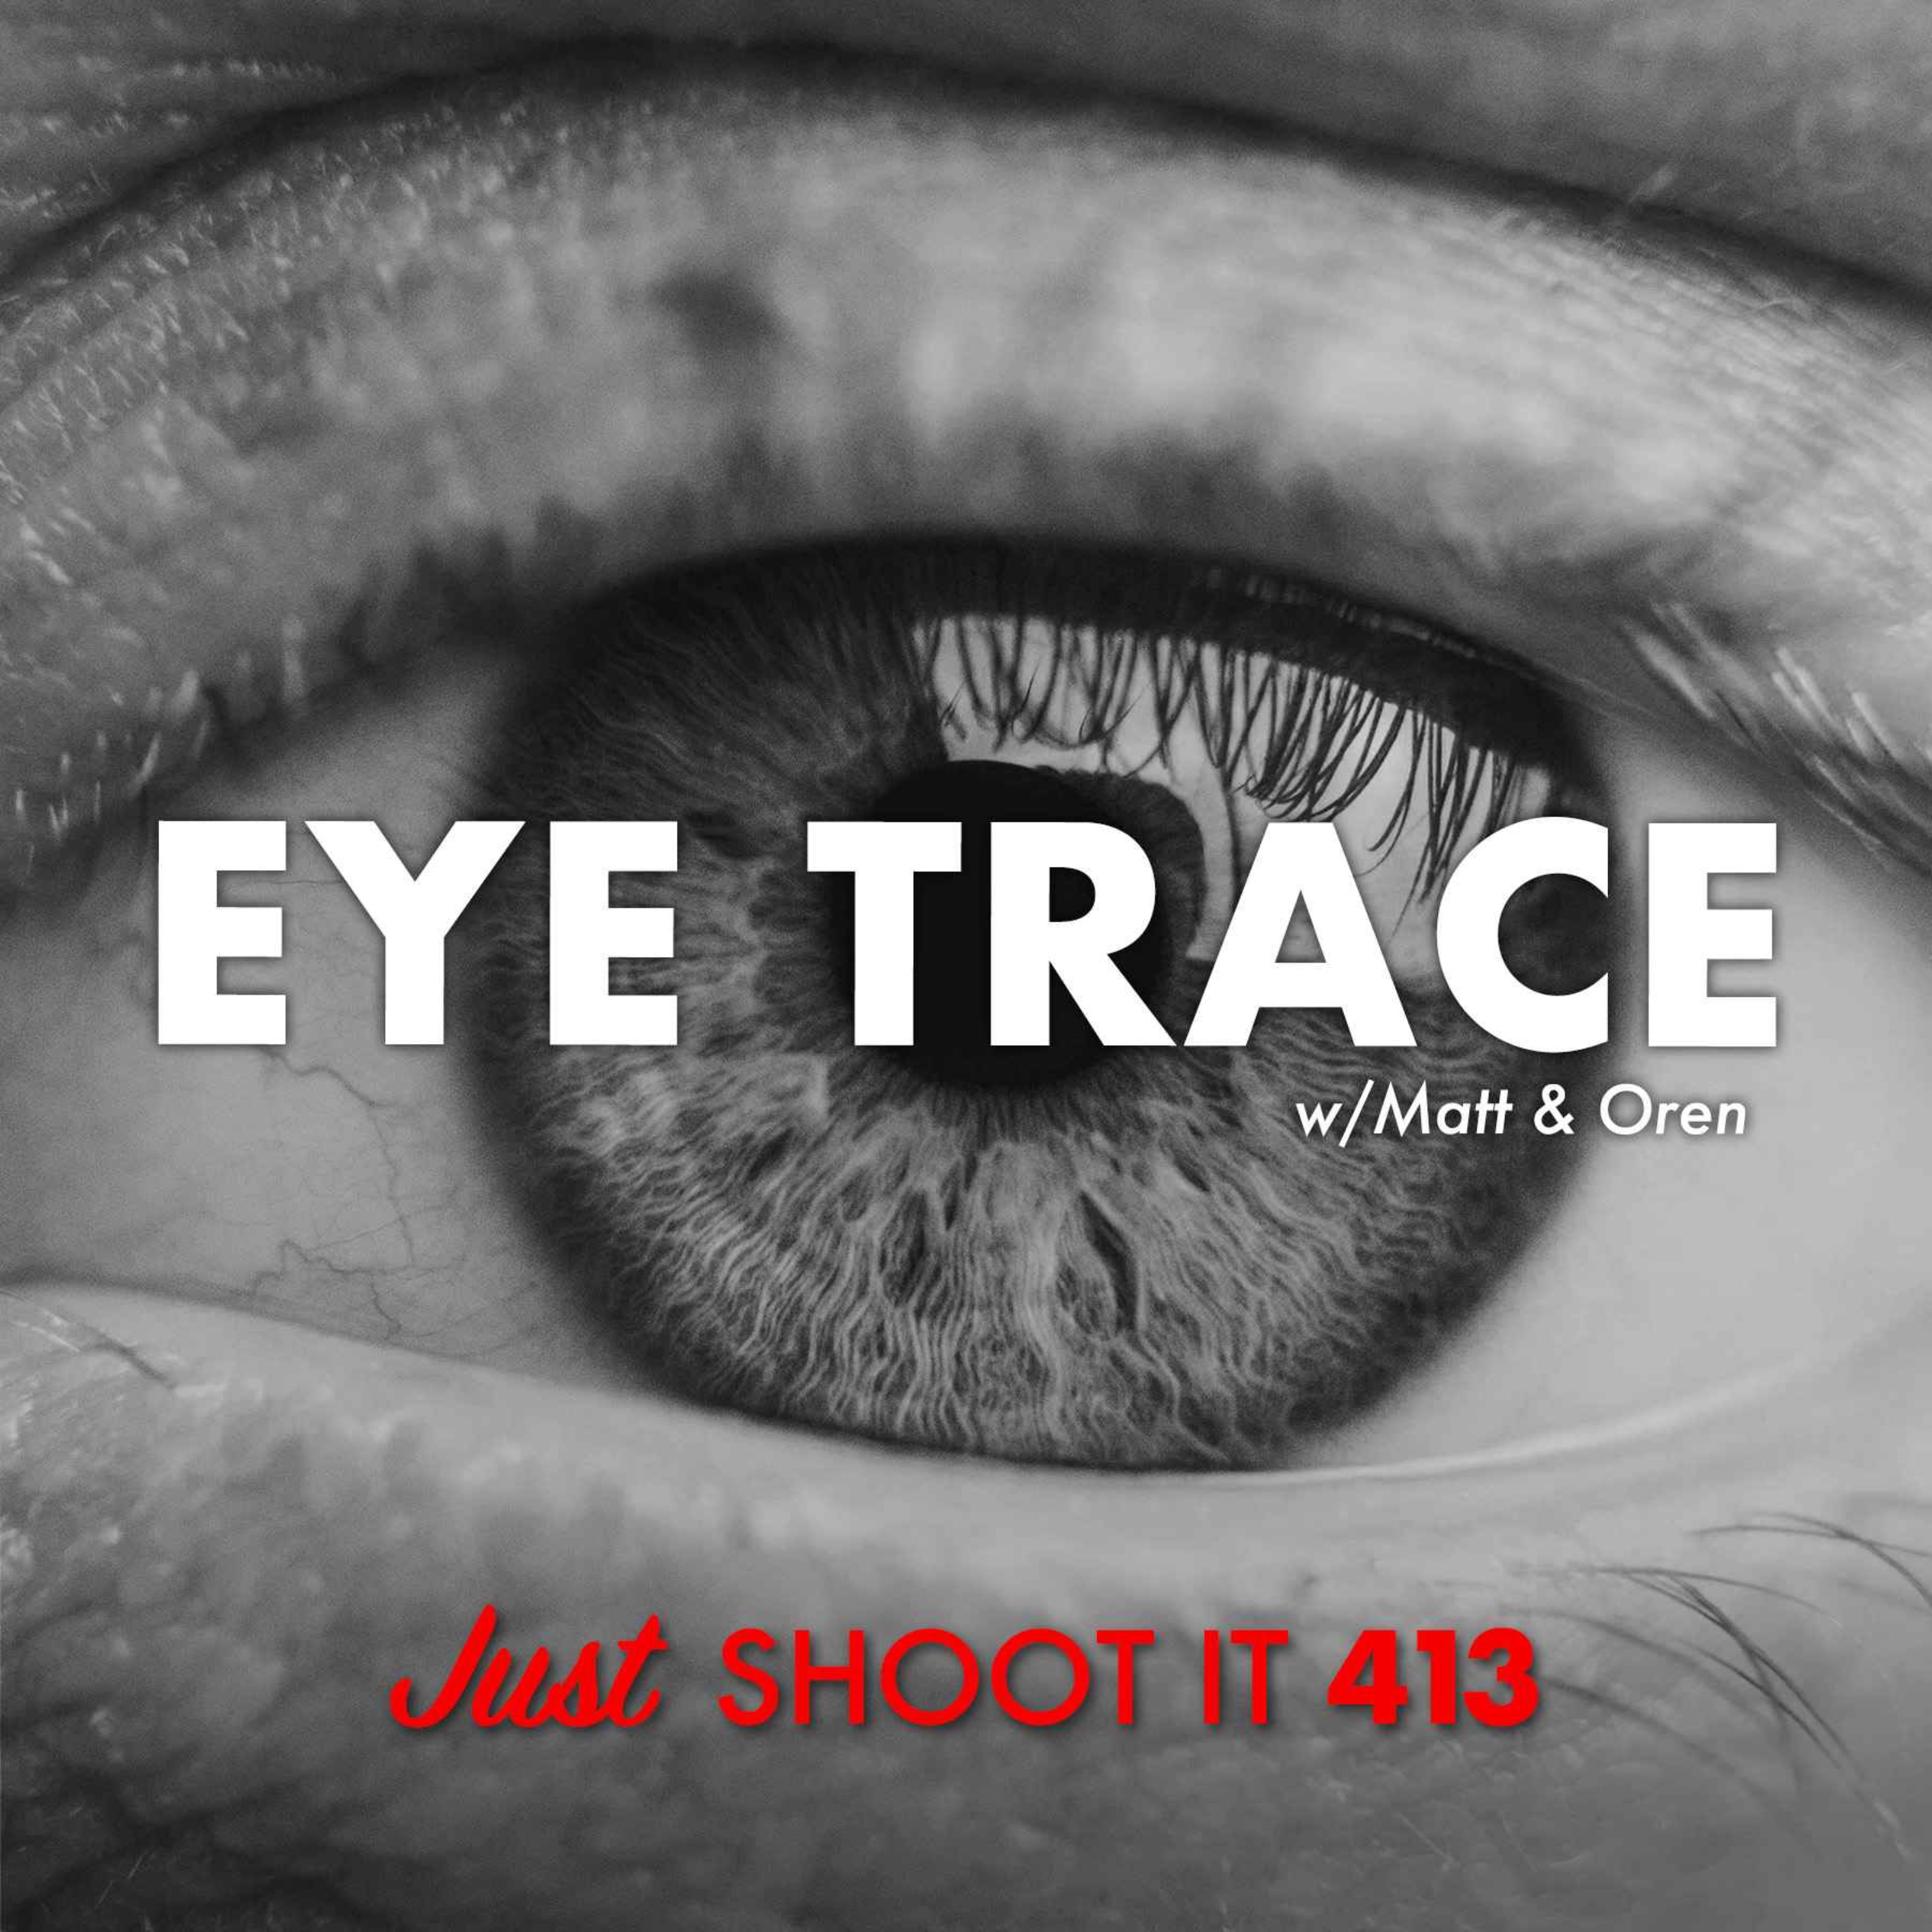 Eye Trace w/Matt & Oren - Just Shoot It 413